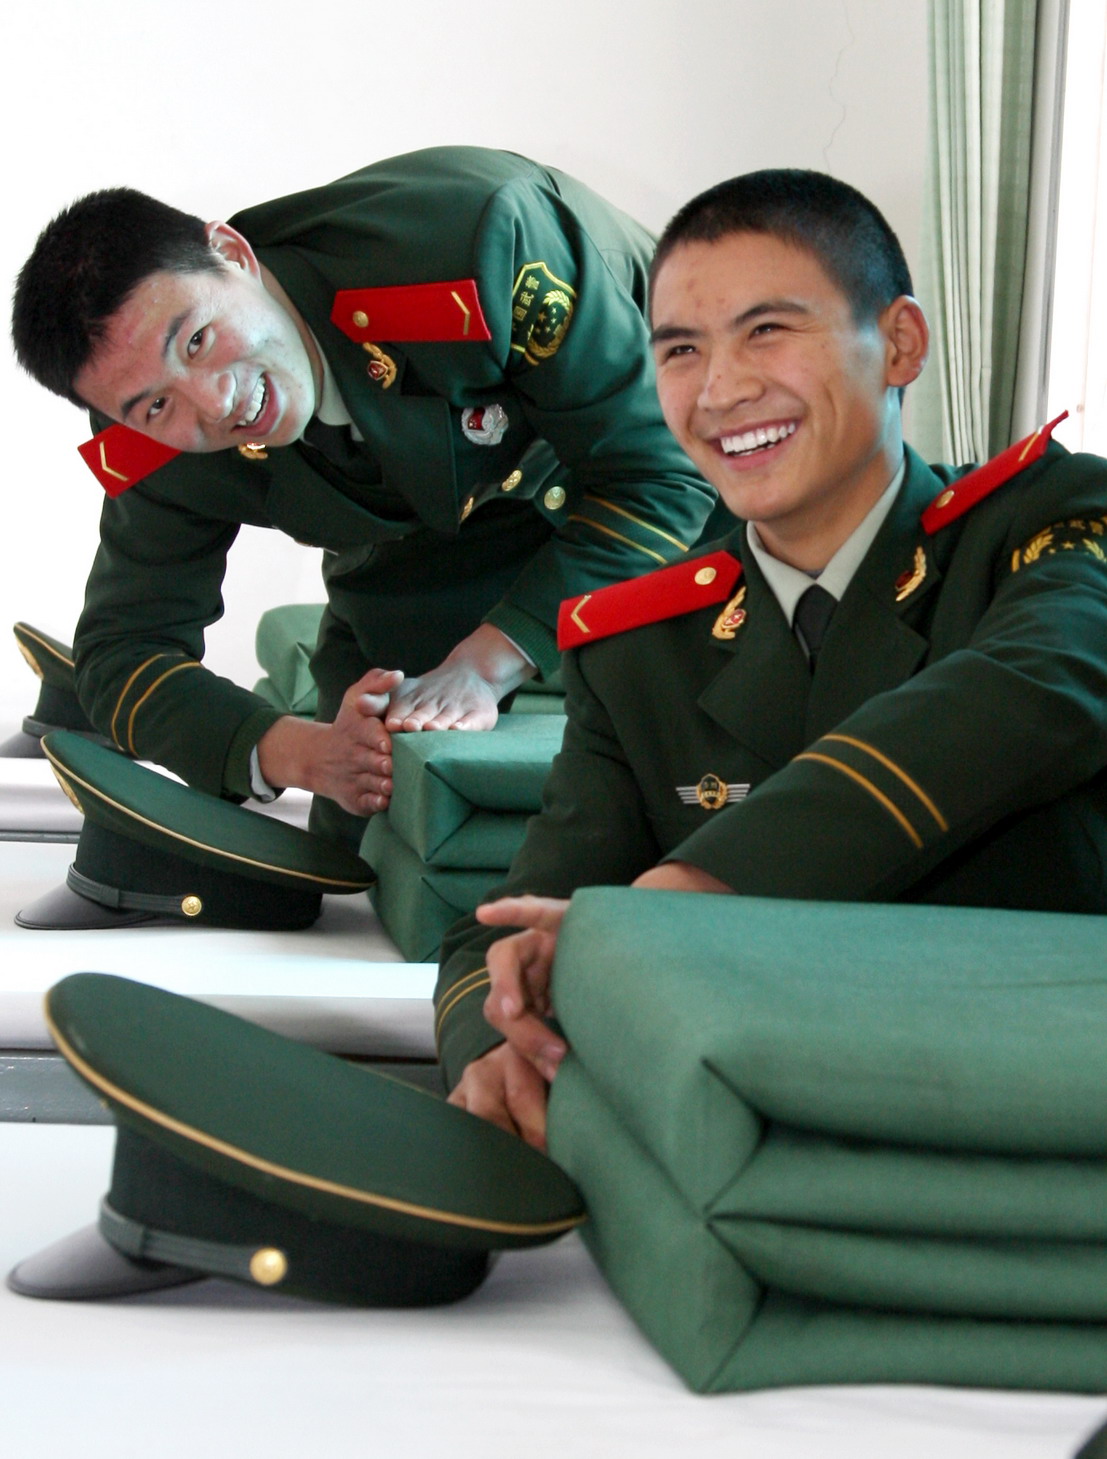 温州武警支队新兵下连 开启军旅生涯新篇章-中国网